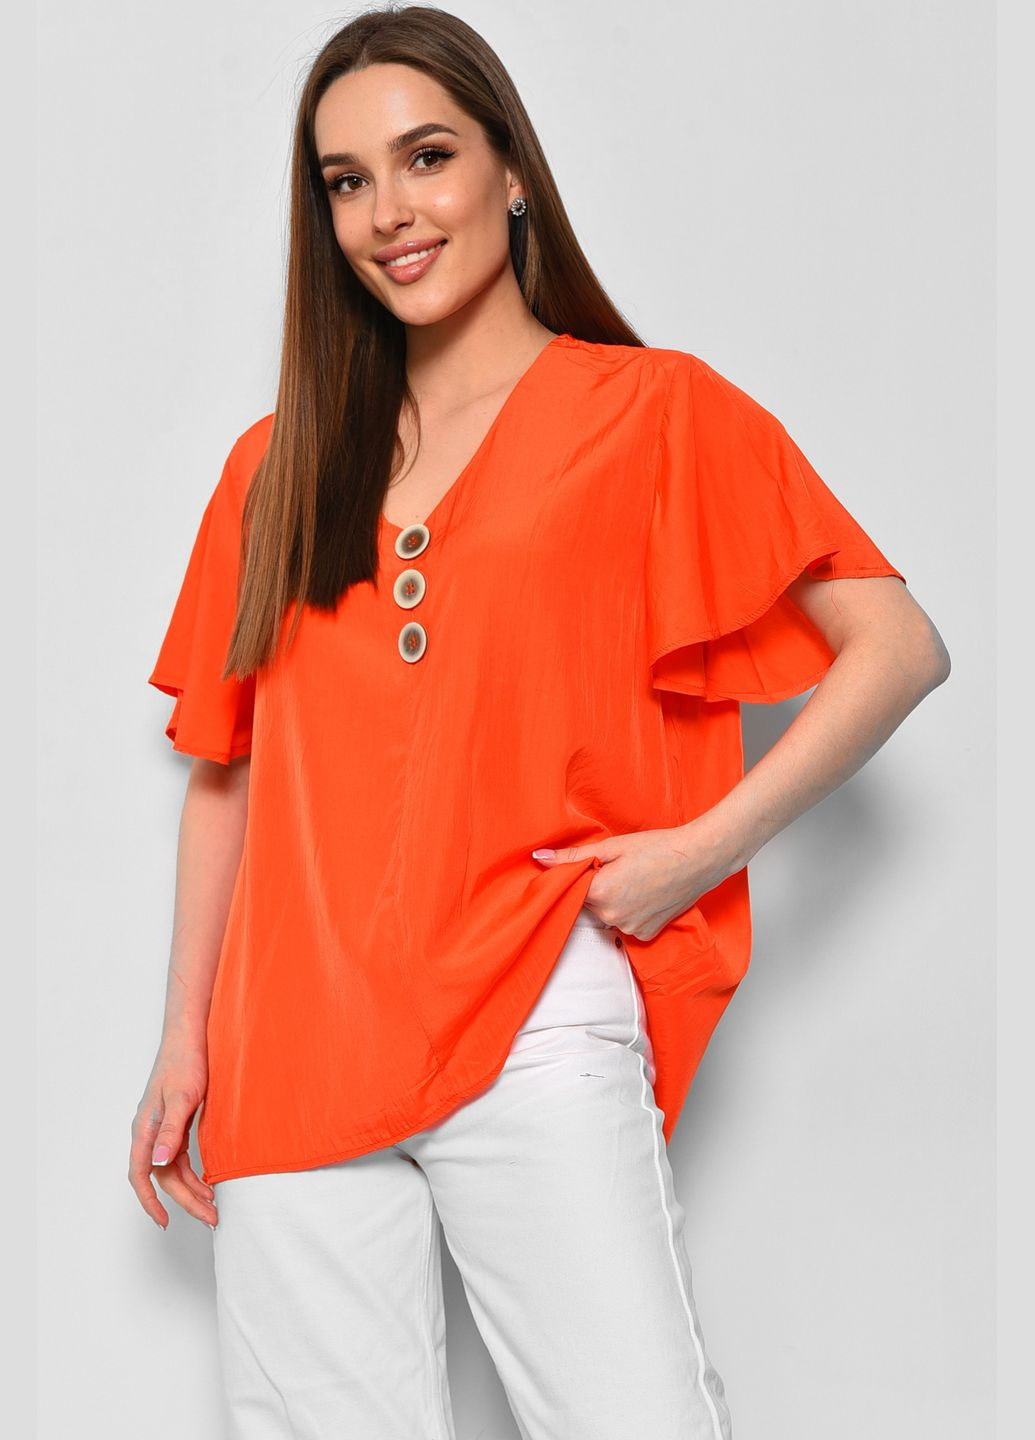 Оранжевая демисезонная блуза женская полубатальная с коротким рукавом оранжевого цвета с баской Let's Shop